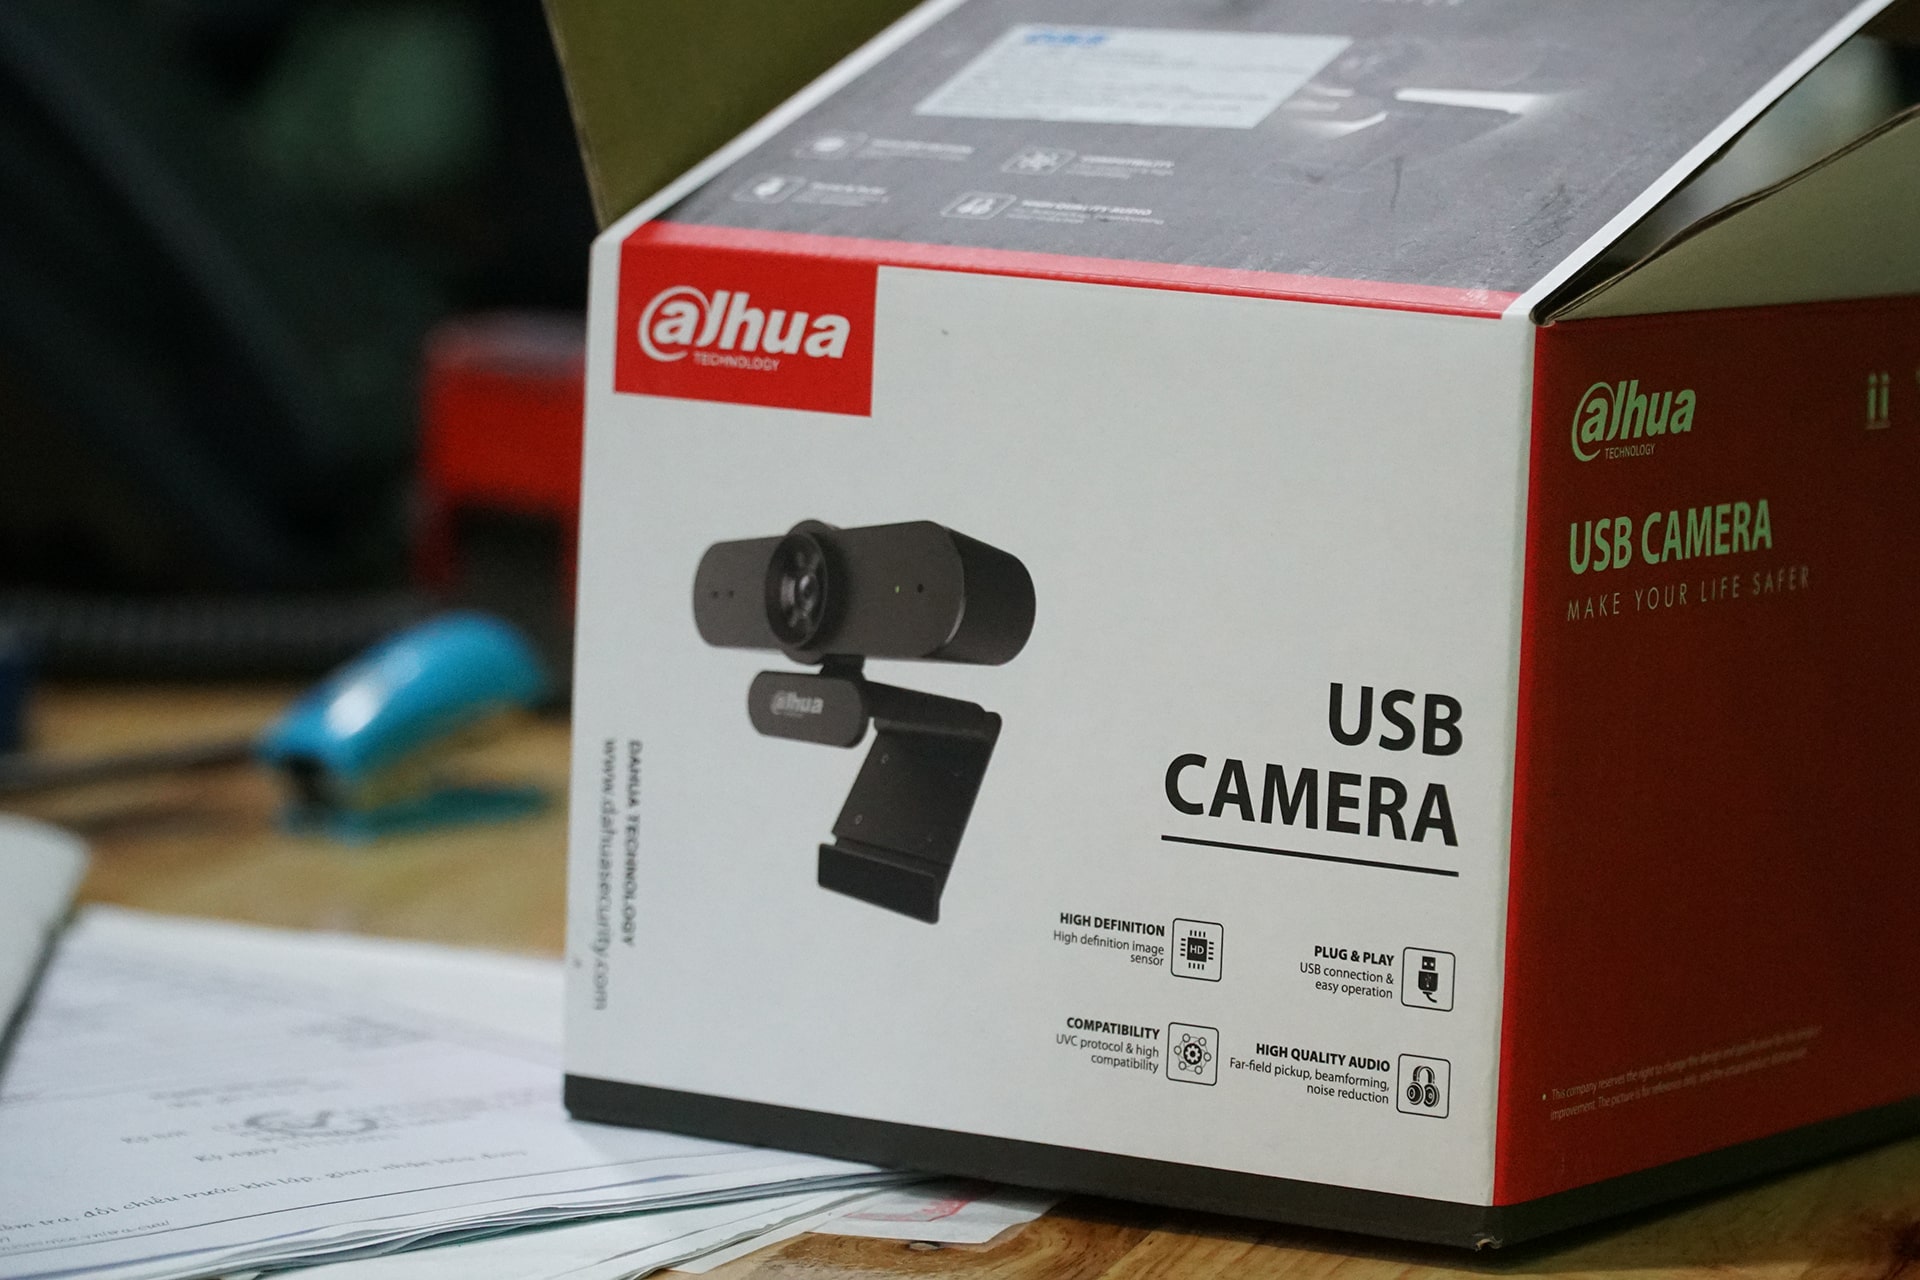 Webcam HD1080P DAHUA UC320 - hàng chính hãng bảo hành 24 tháng